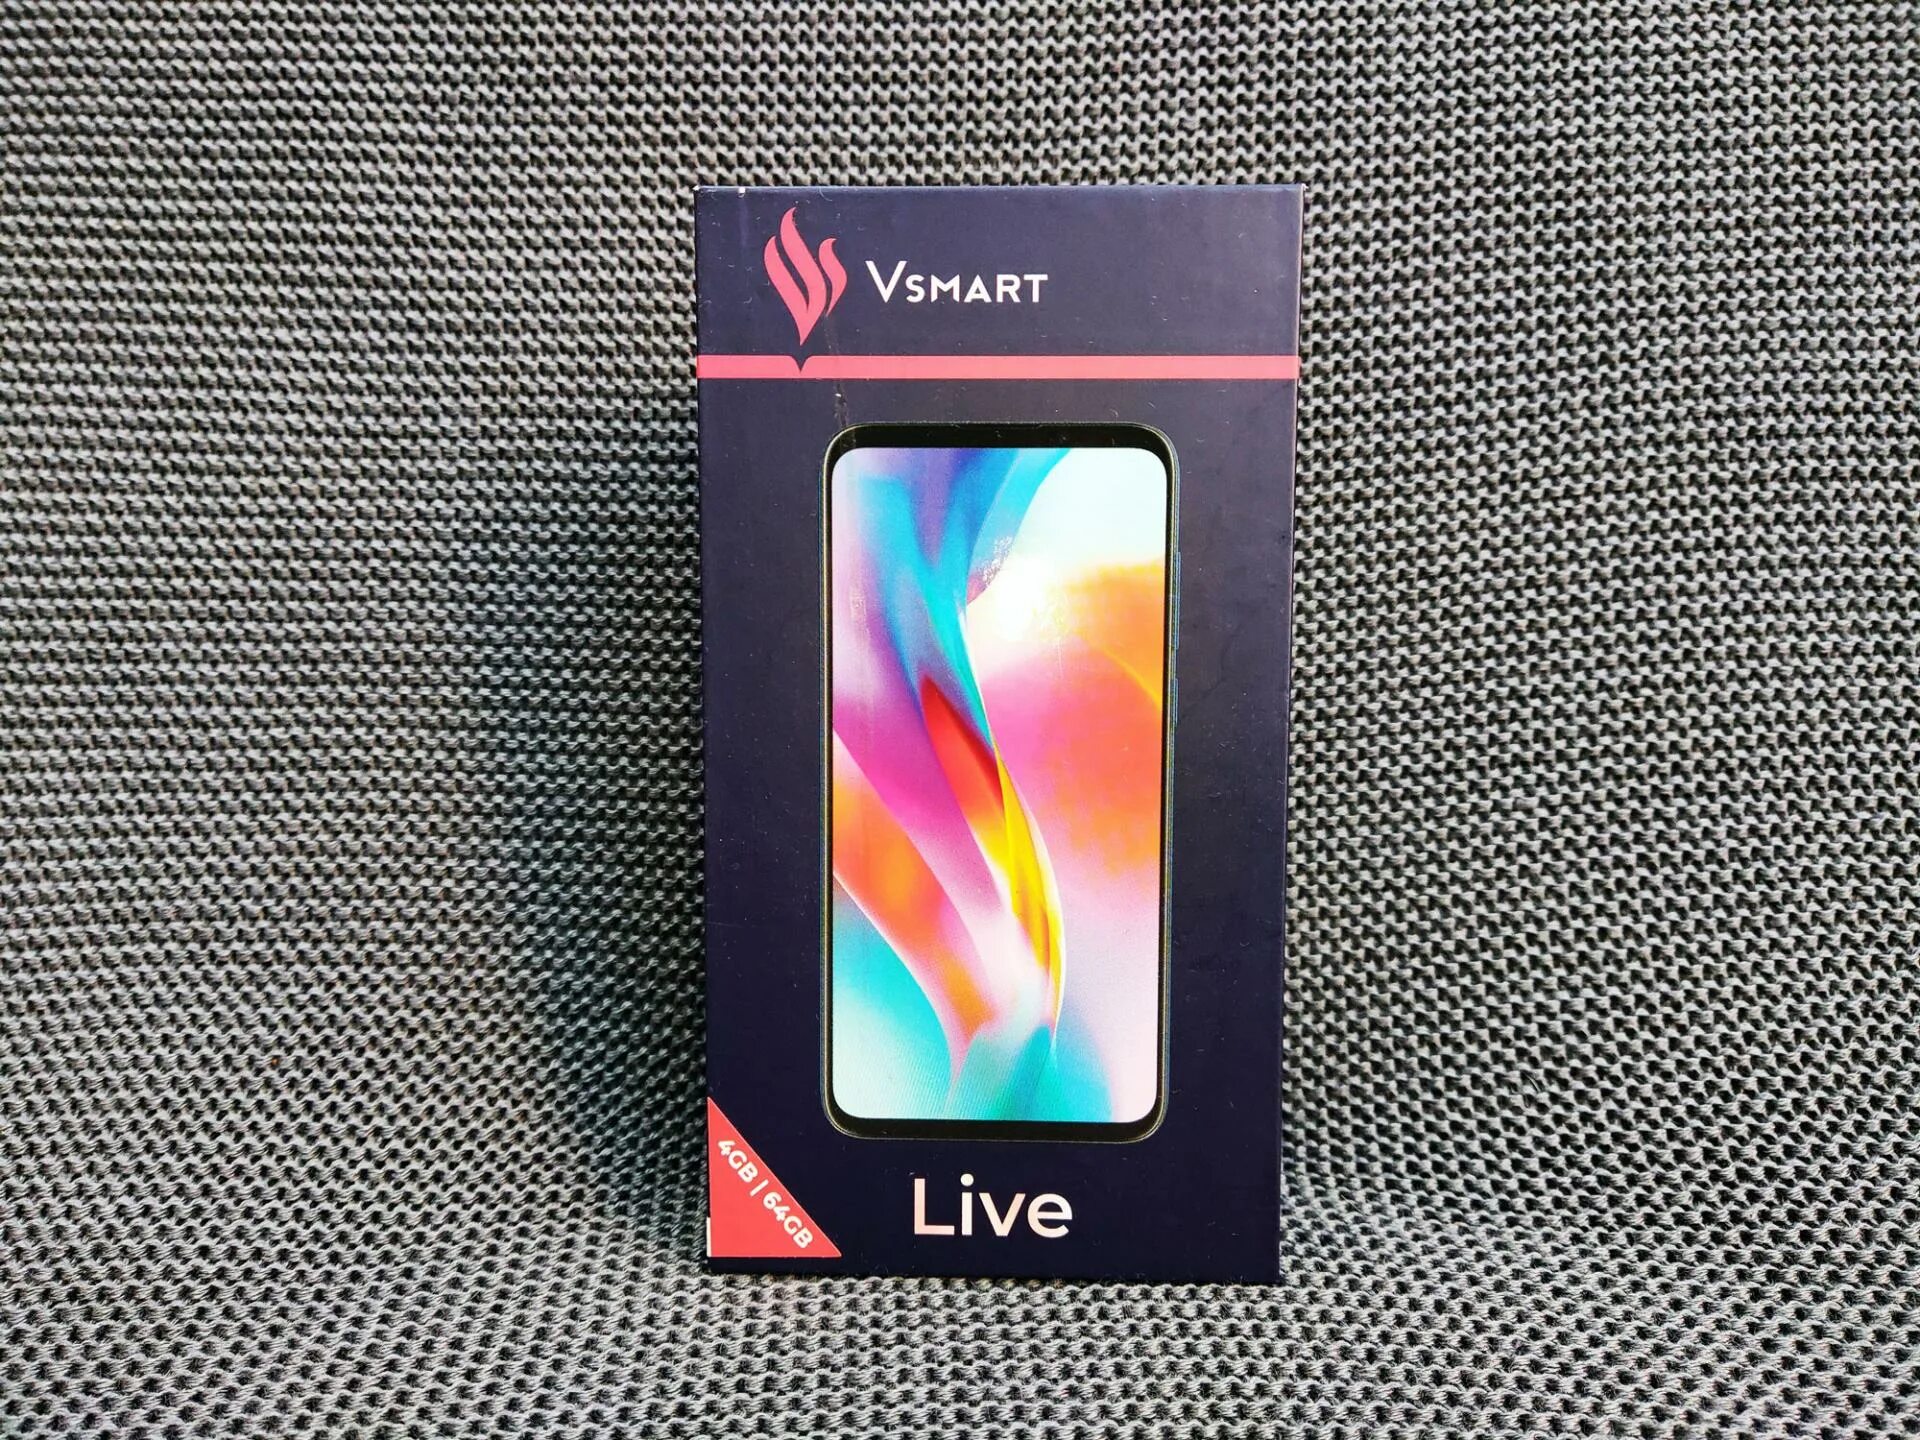 Vsmart live. Смартфон Live 4/64gb. Вьетнамский смартфон Smart. Vsmart Live 4pda.